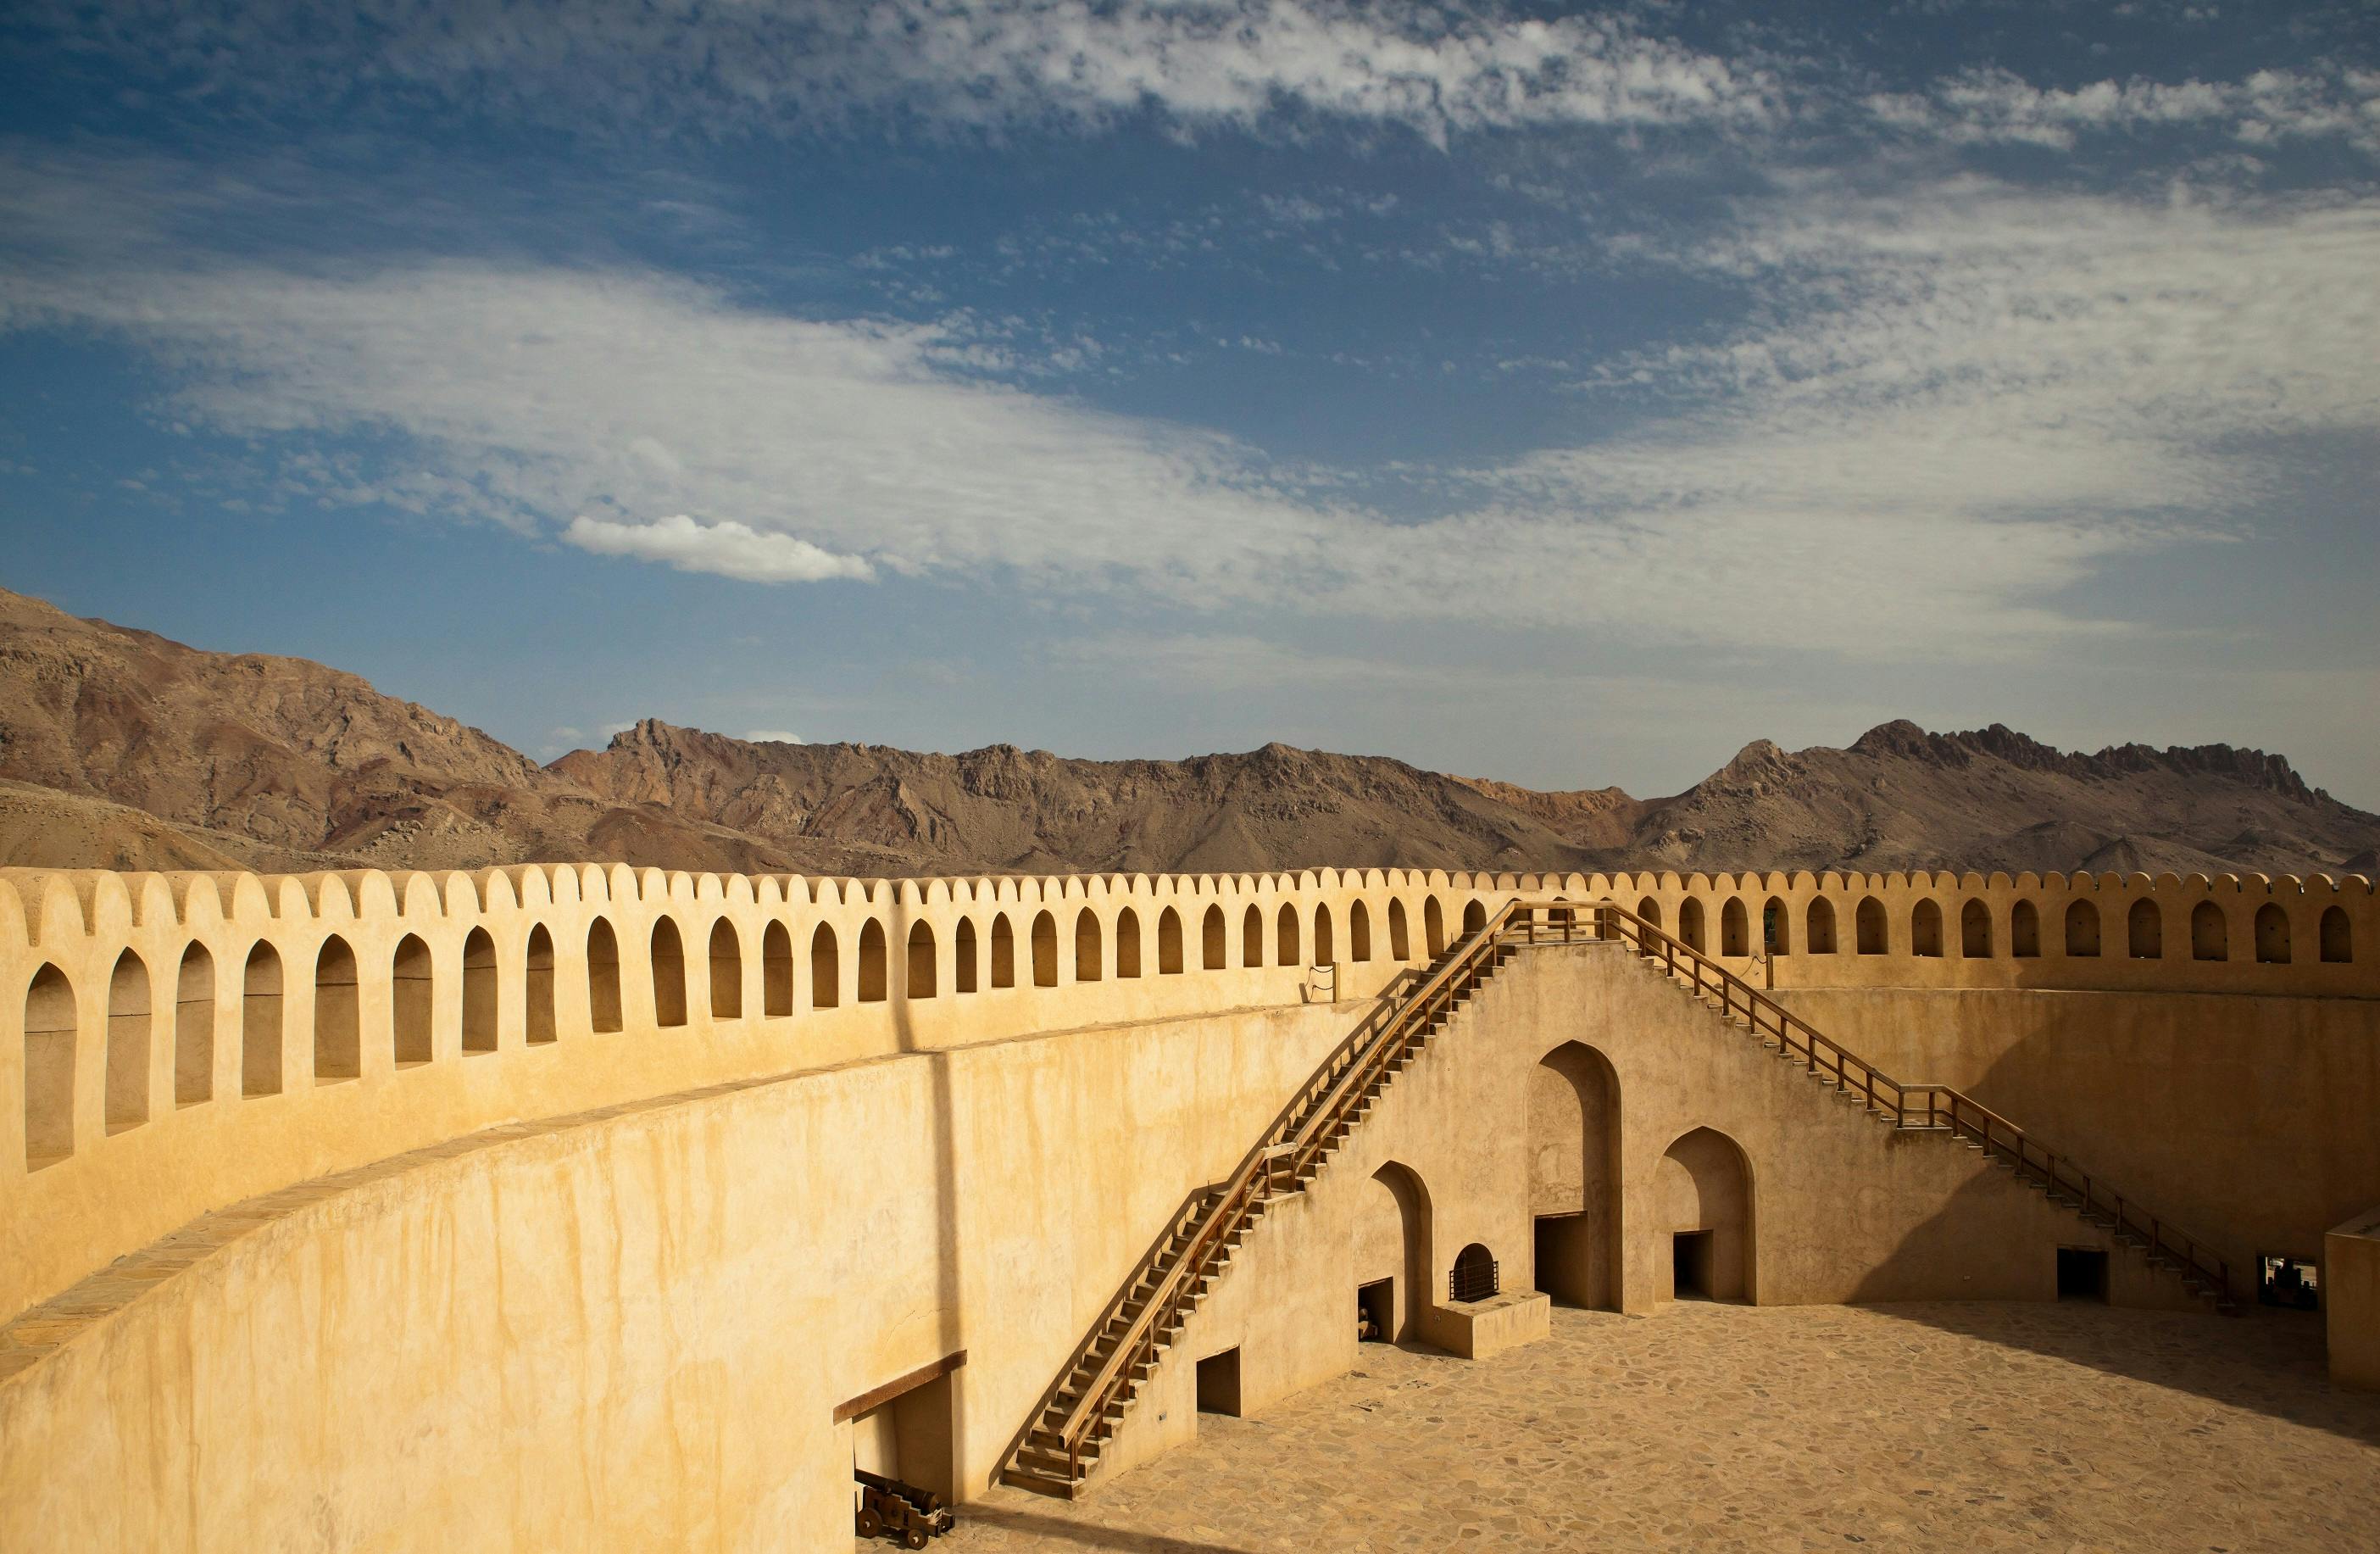 Ganztägige private Tour nach Nizwa einschließlich der Festungen Bahla und Jabrin